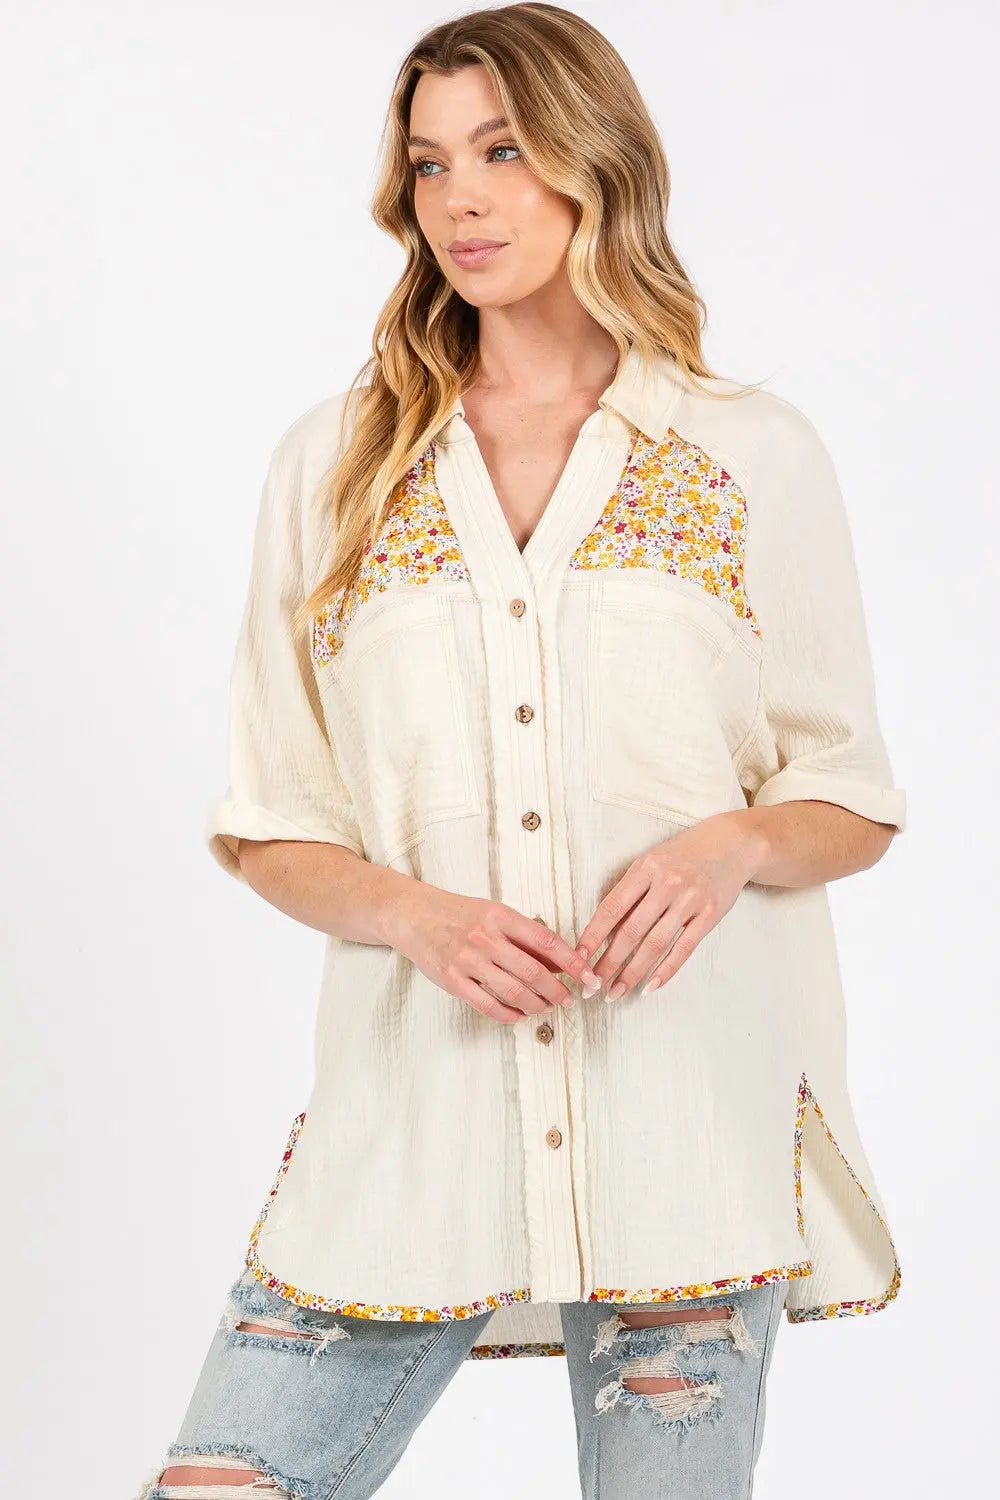 SAGE + FIG Full Size Floral Detail Button Up Short Sleeve Shirt Trendsi